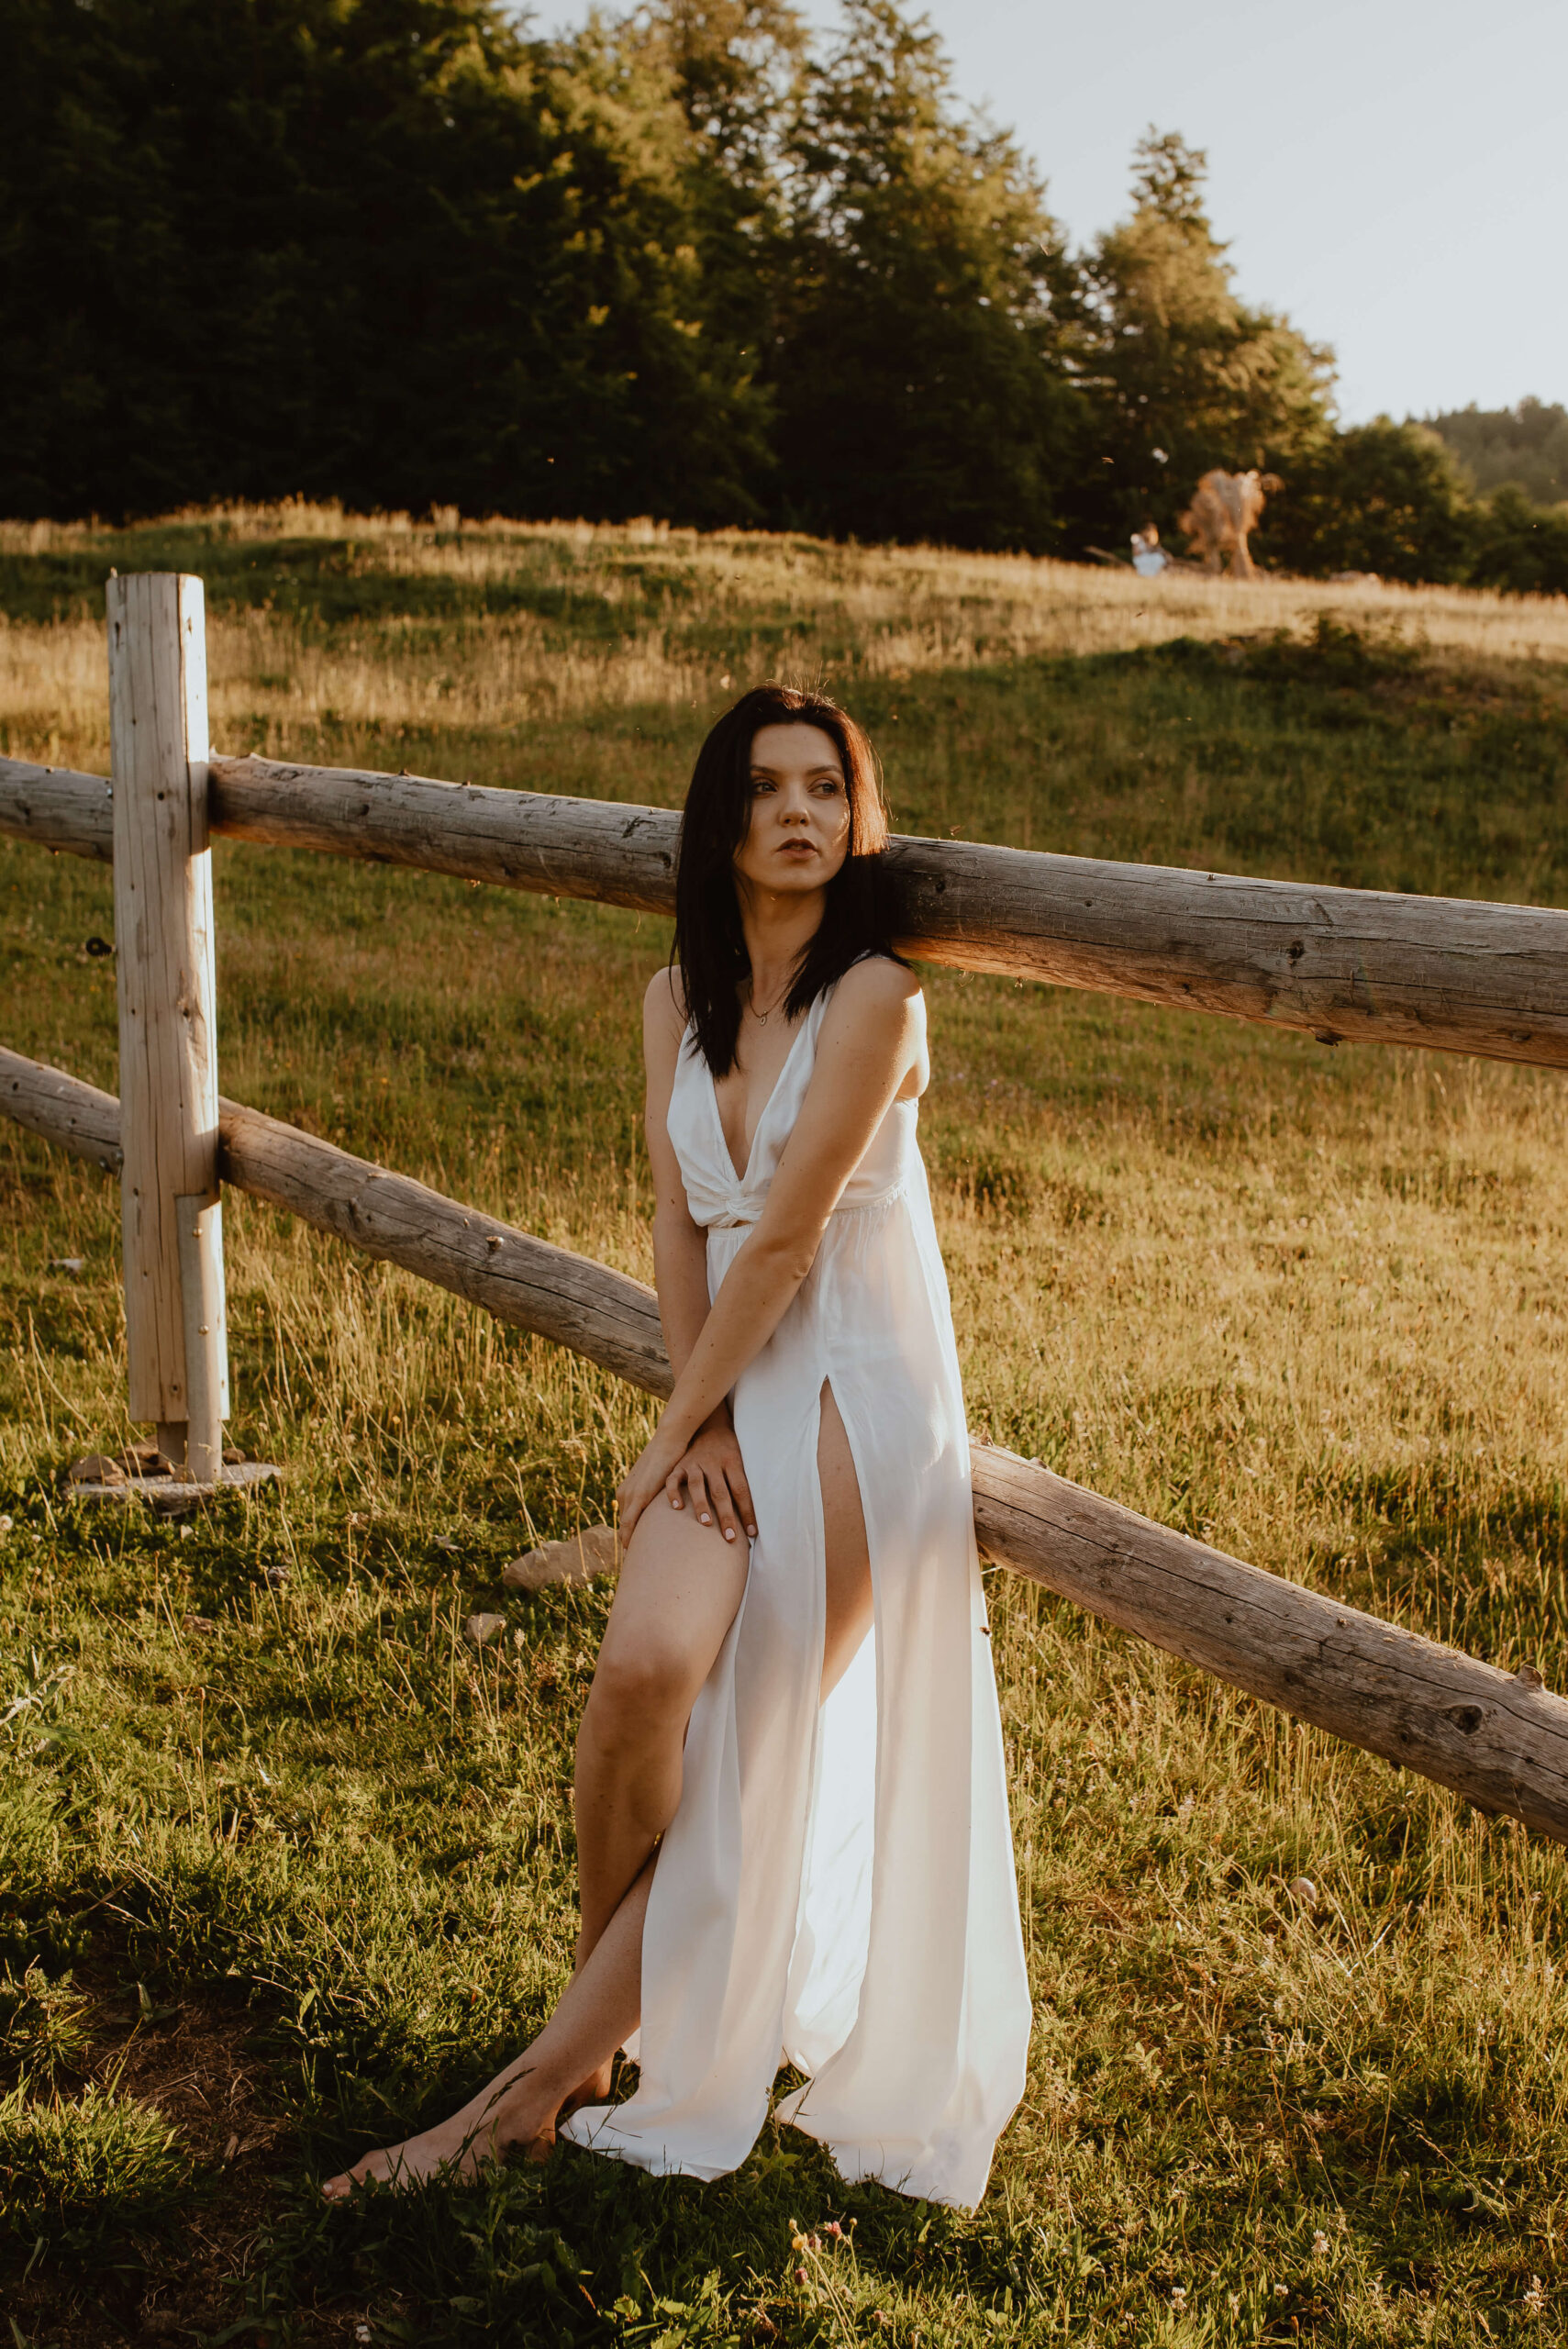 Eine bezaubernde Braut in einem zarten, fließenden Kleid, die den Sonnenaufgang in der Nähe einer rustikalen Pferdekoppel bewundert und sich von der unberührten Schönheit der Natur inspirieren lässt.